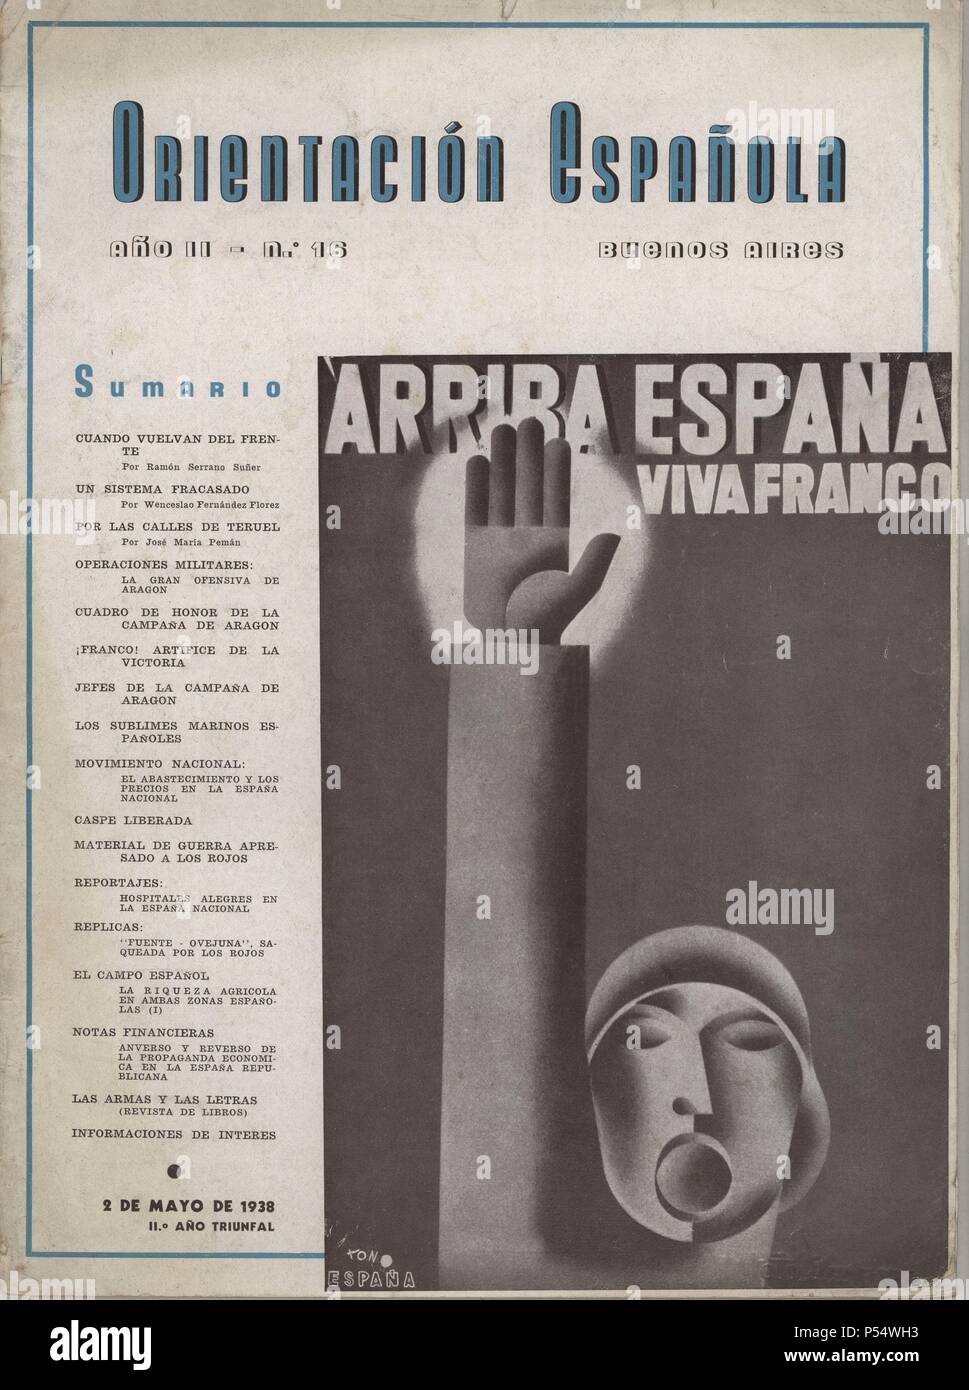 Portada de la revista Orientación Española, editada en Buenos Aires en mayo de 1938. Saludo fascista. Stock Photo